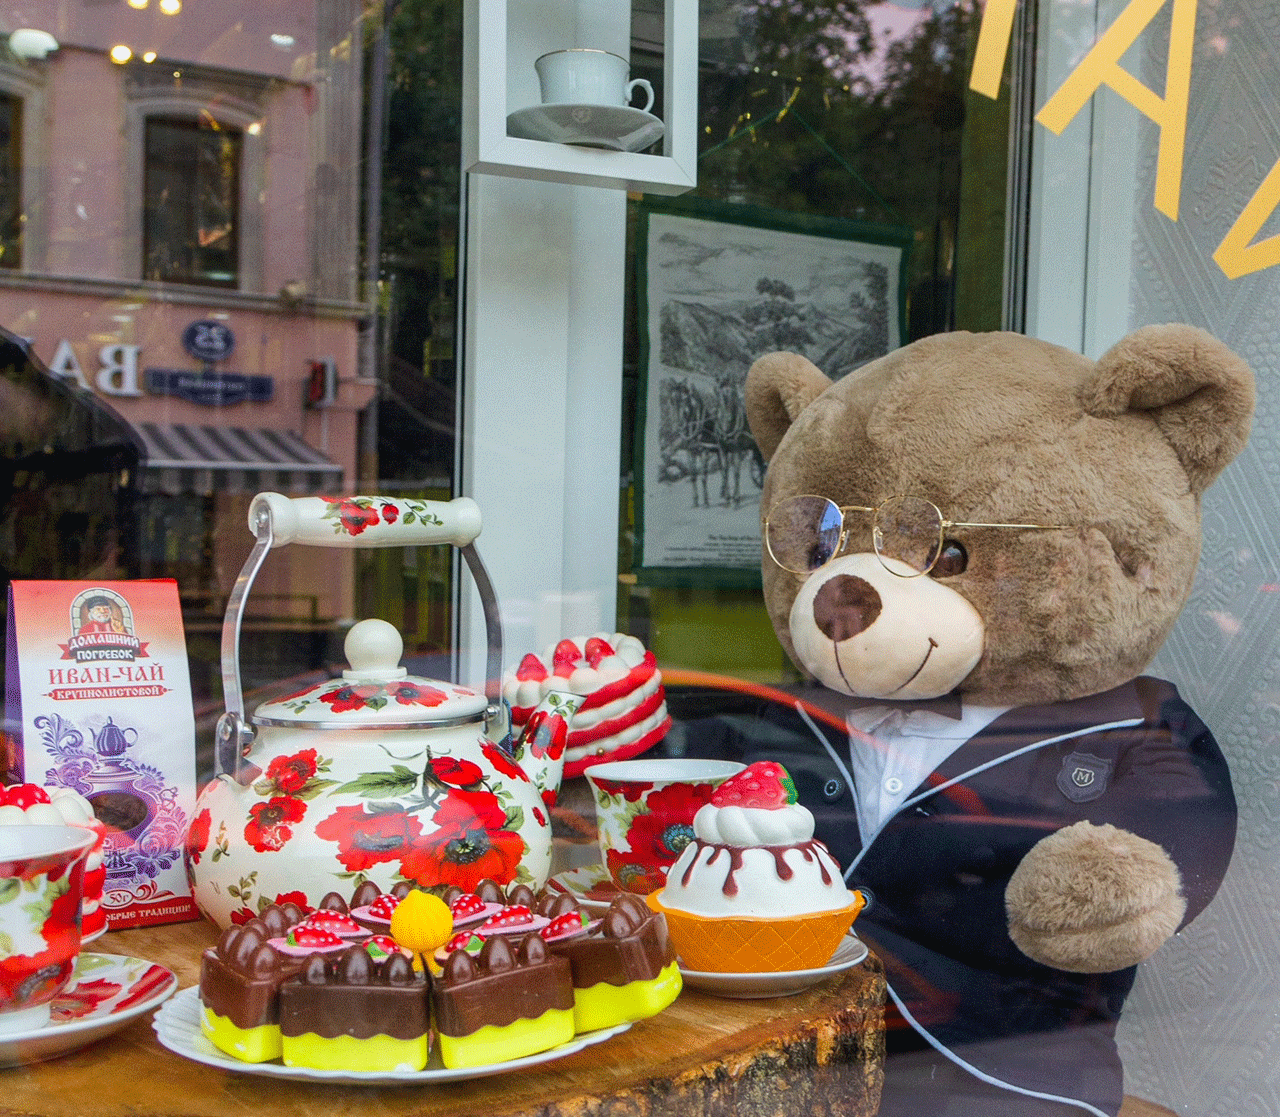 В предверии чемпионата мира старейший магазин «Кондитерская» на Пятницкой встречает гостей столицы душевным чаепитием в русском стиле!